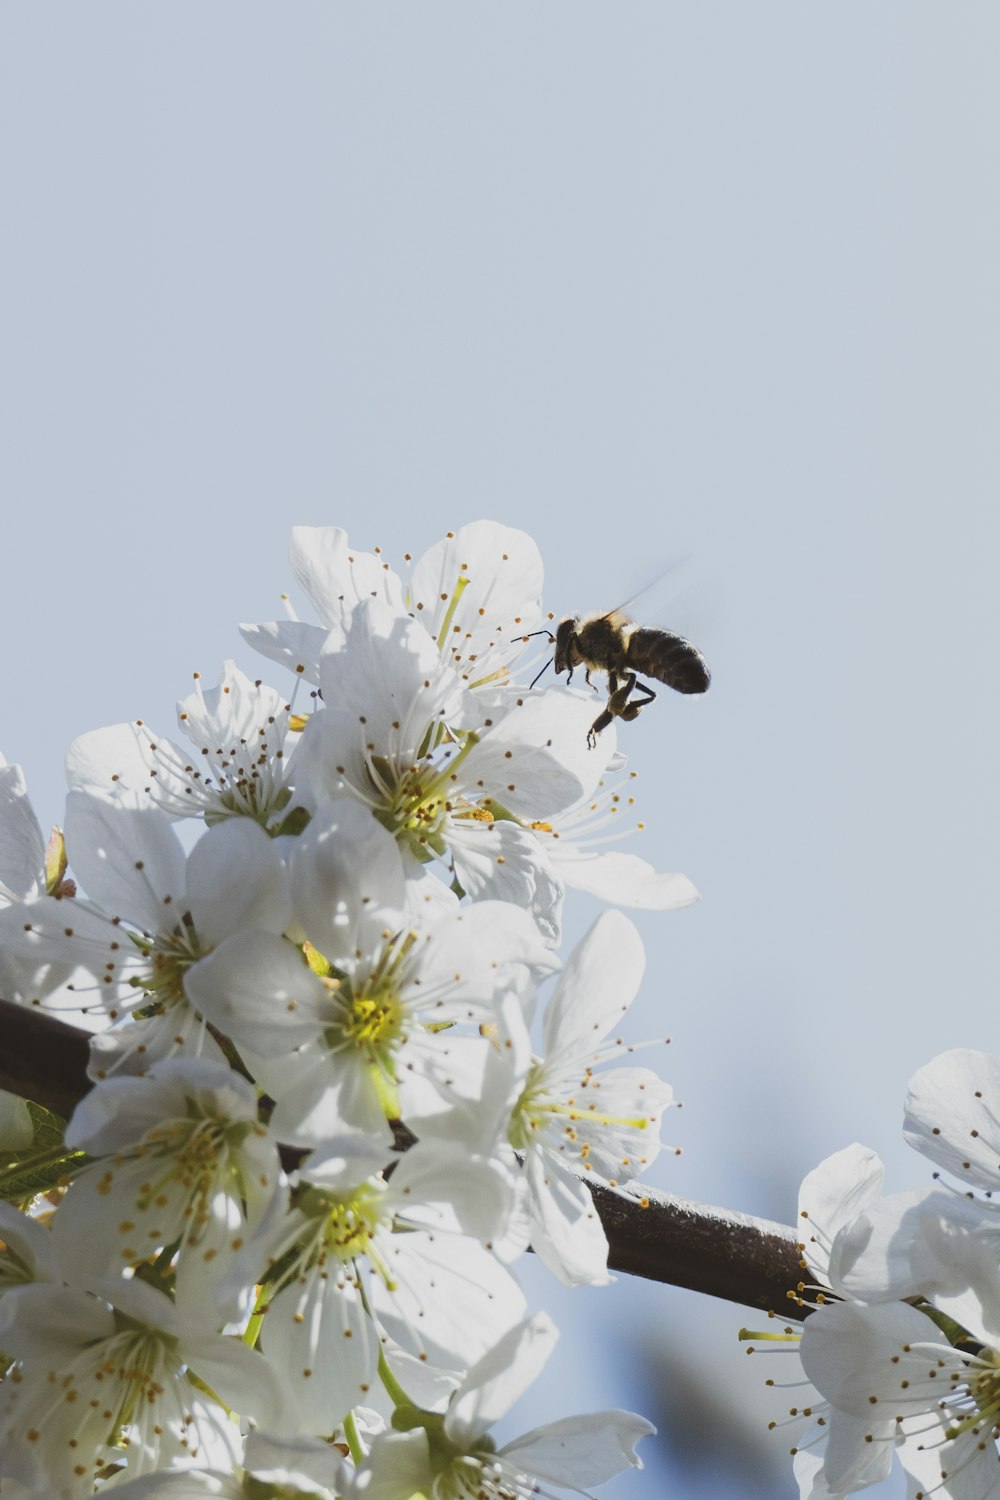 Une abeille volant au-dessus d’un arbre à fleurs blanches